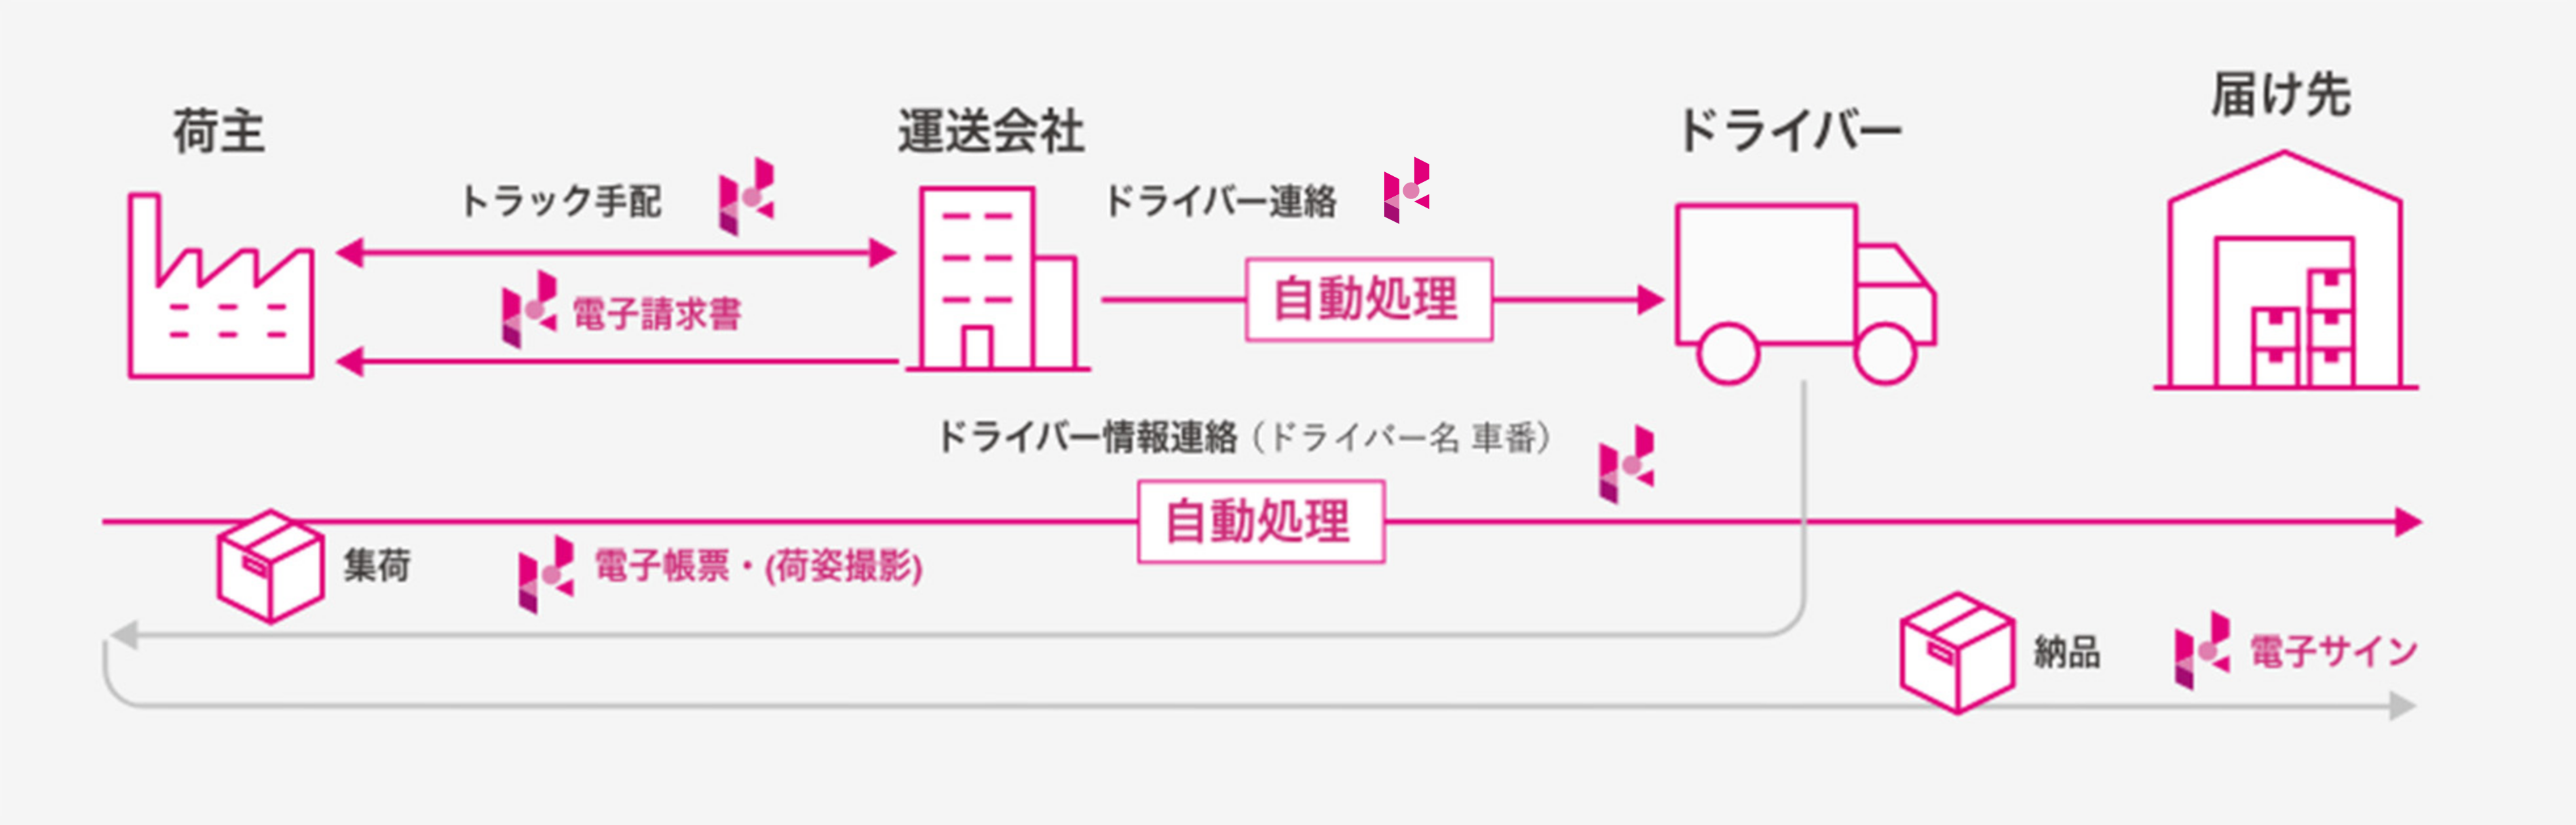 Hacologi サービスの流れ イメージ図